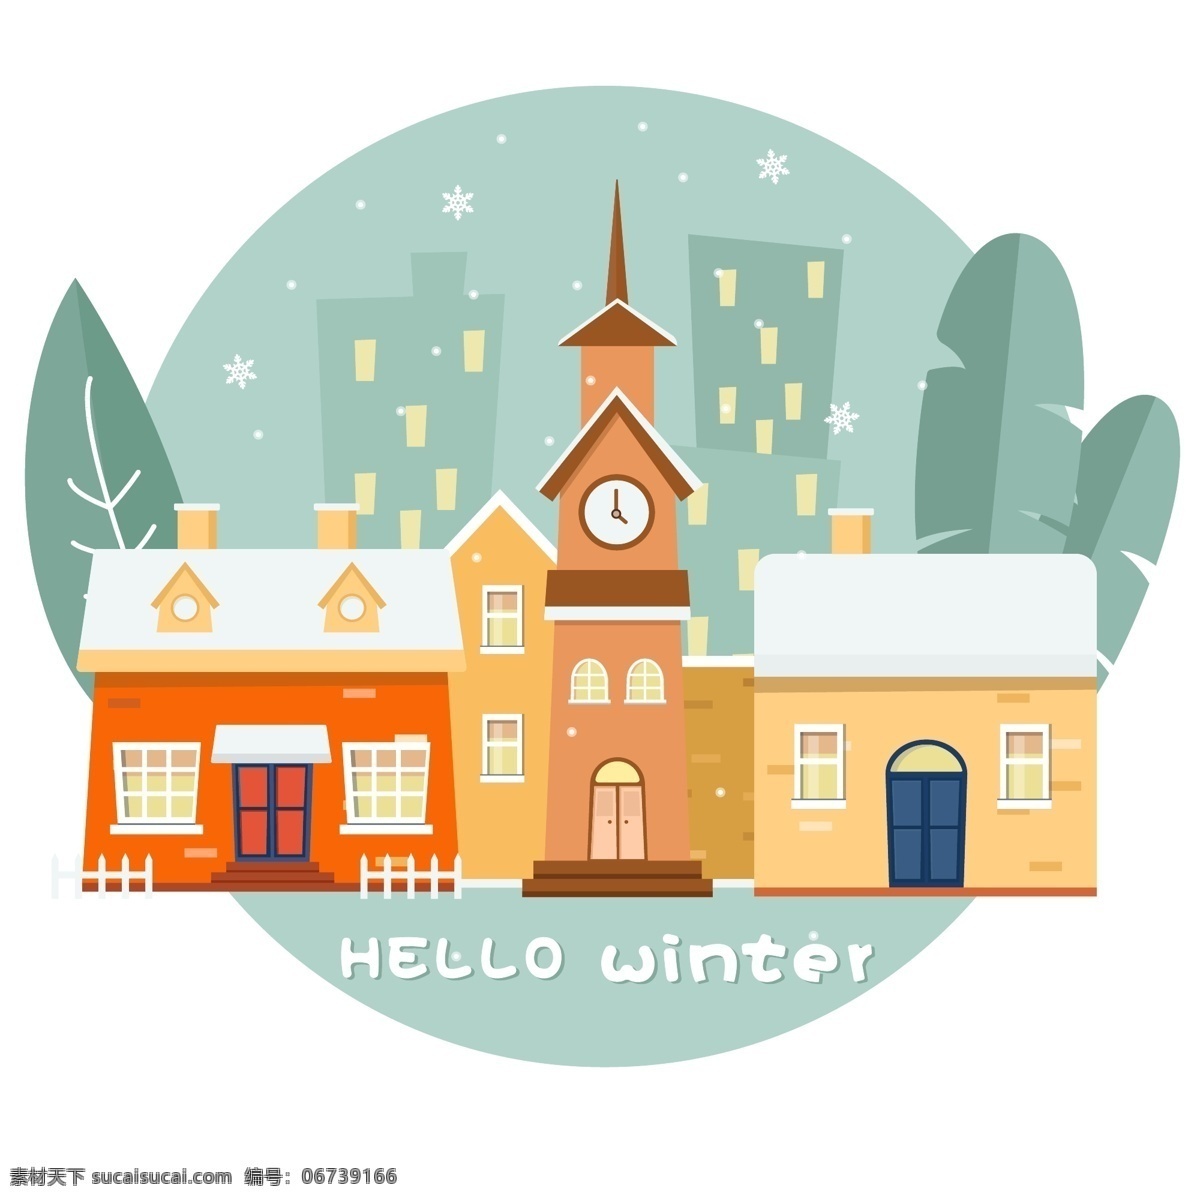 冬日 元素 暖色 温馨 房屋 卡通 灯塔 树叶